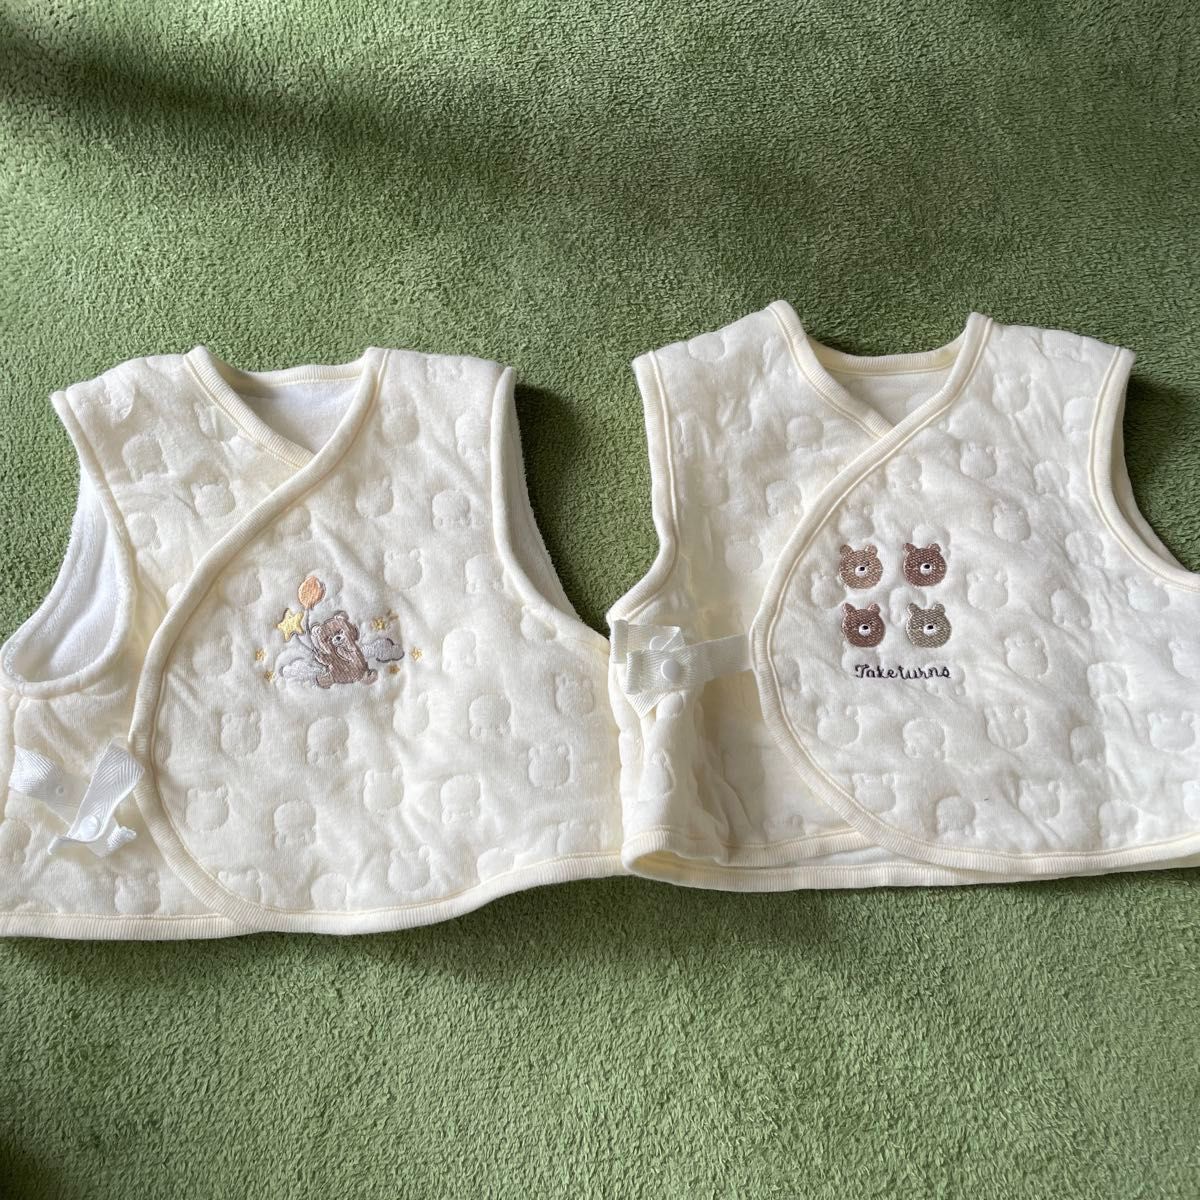 ツーウェイオール カバーオールベスト付き アカチャンホンポ 50-60 ベビー服 双子 おそろい 新生児